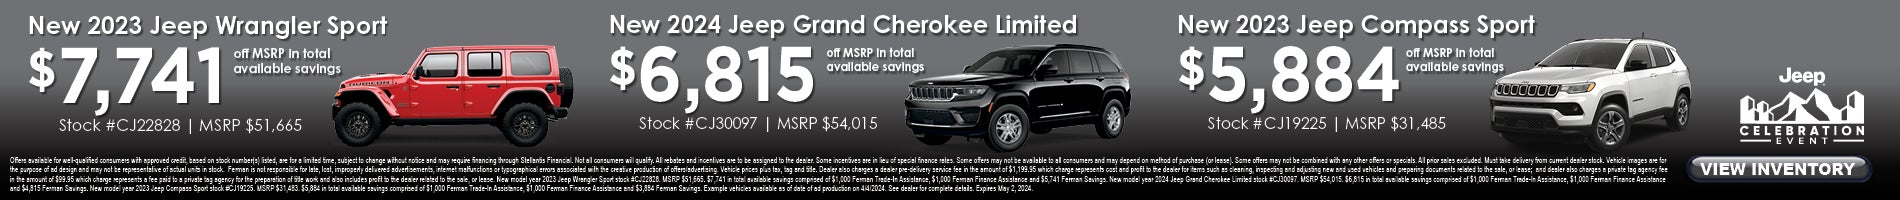 April Savings on New Jeep Wrangler, Grand Cherokee & Compass